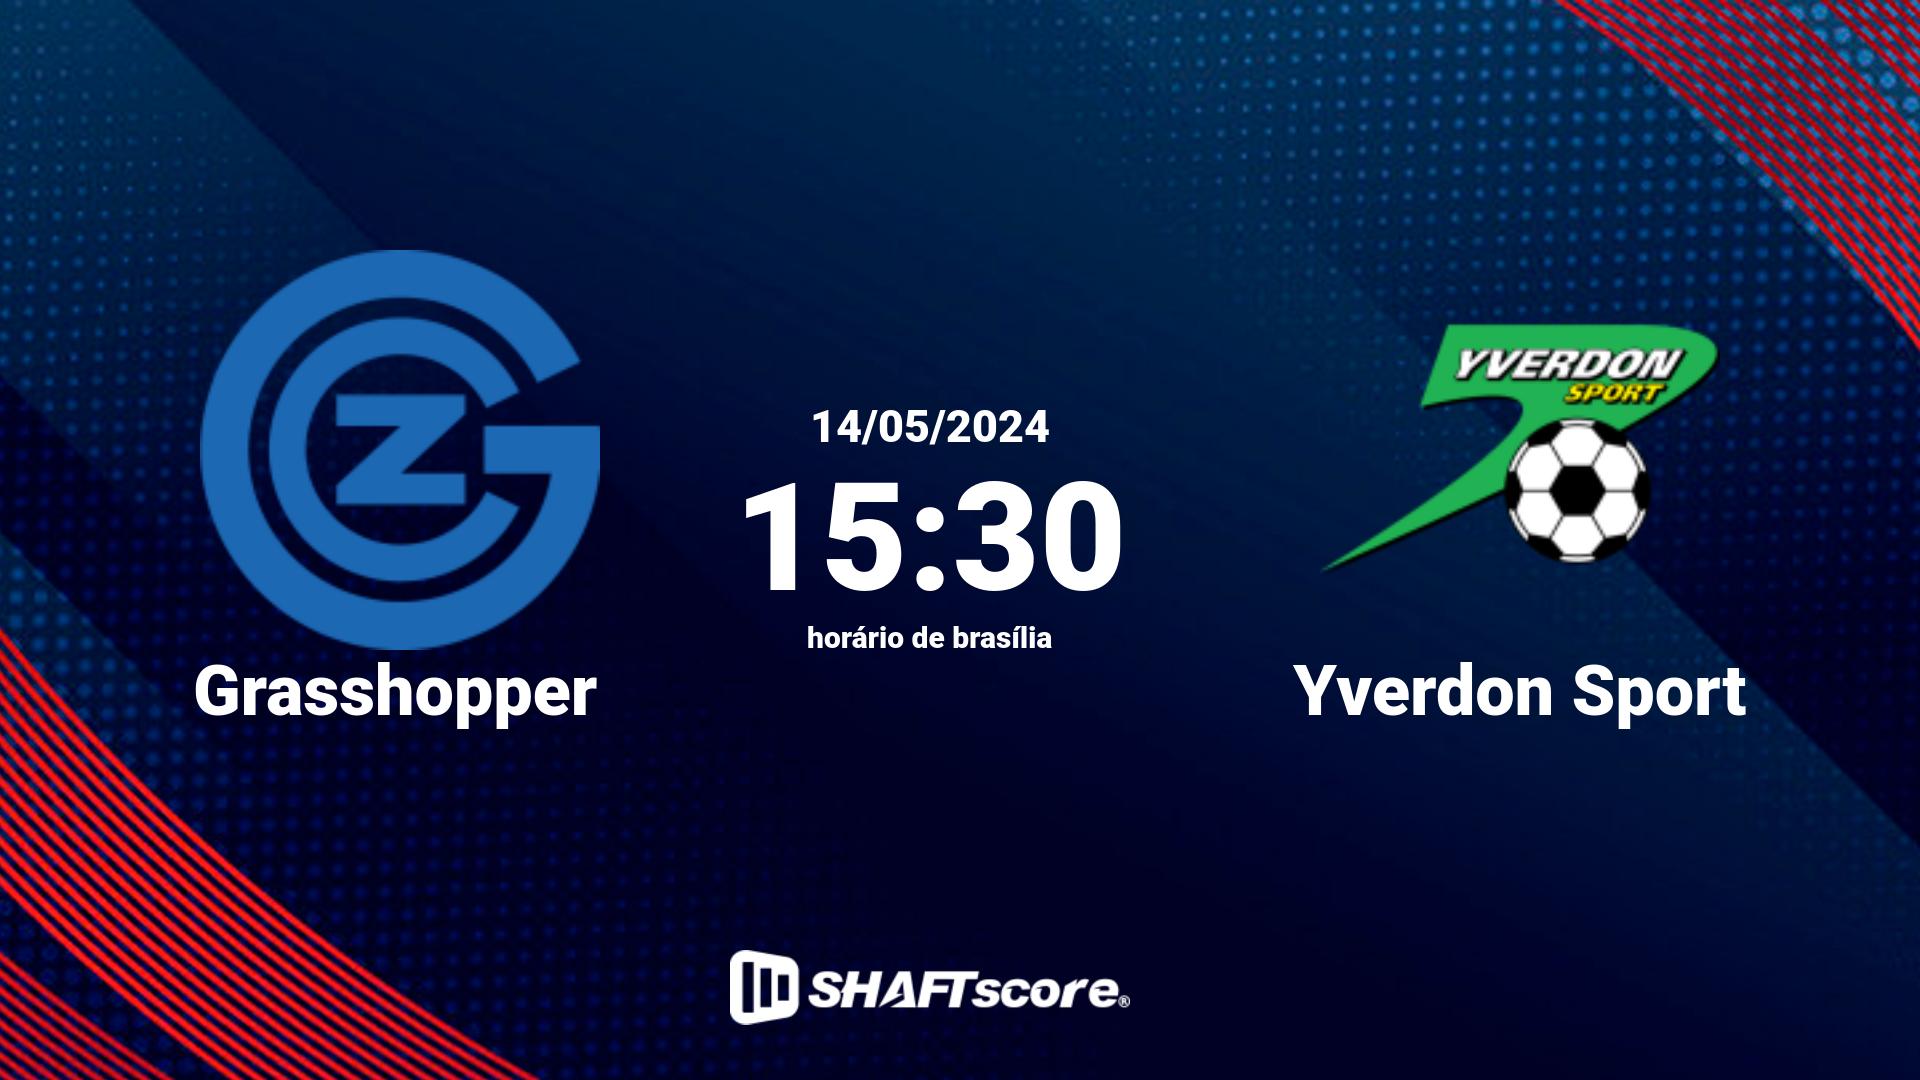 Estatísticas do jogo Grasshopper vs Yverdon Sport 14.05 15:30